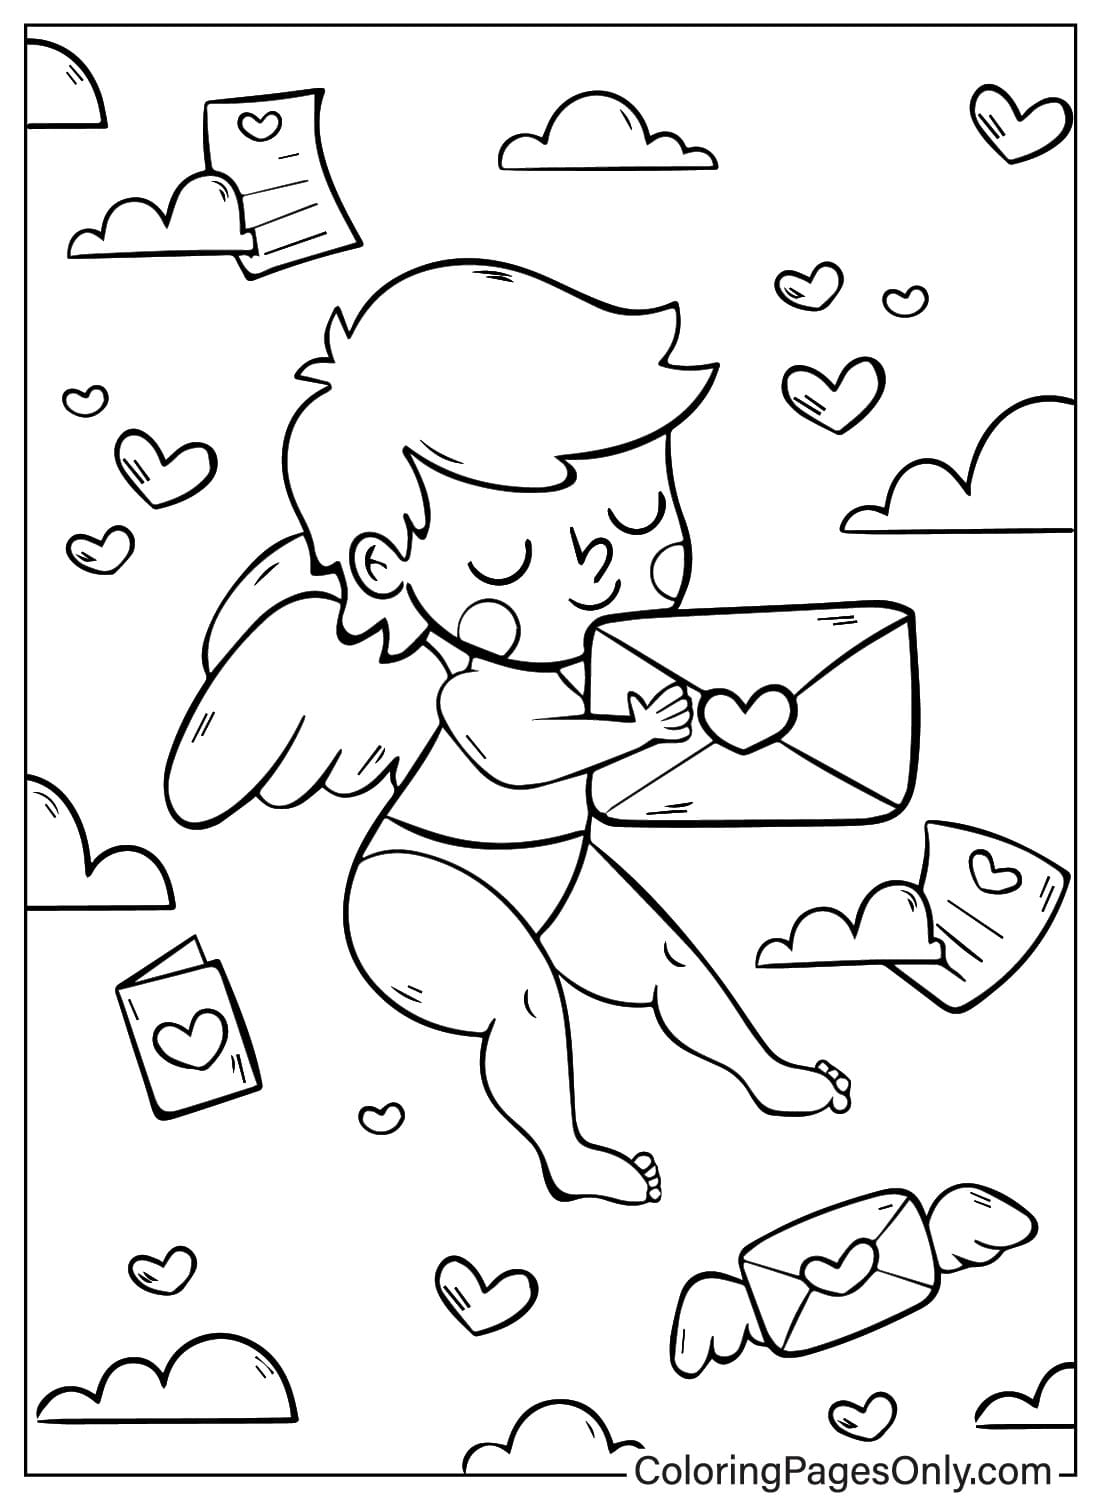 Página para colorir para impressão do Cupido do Cupido